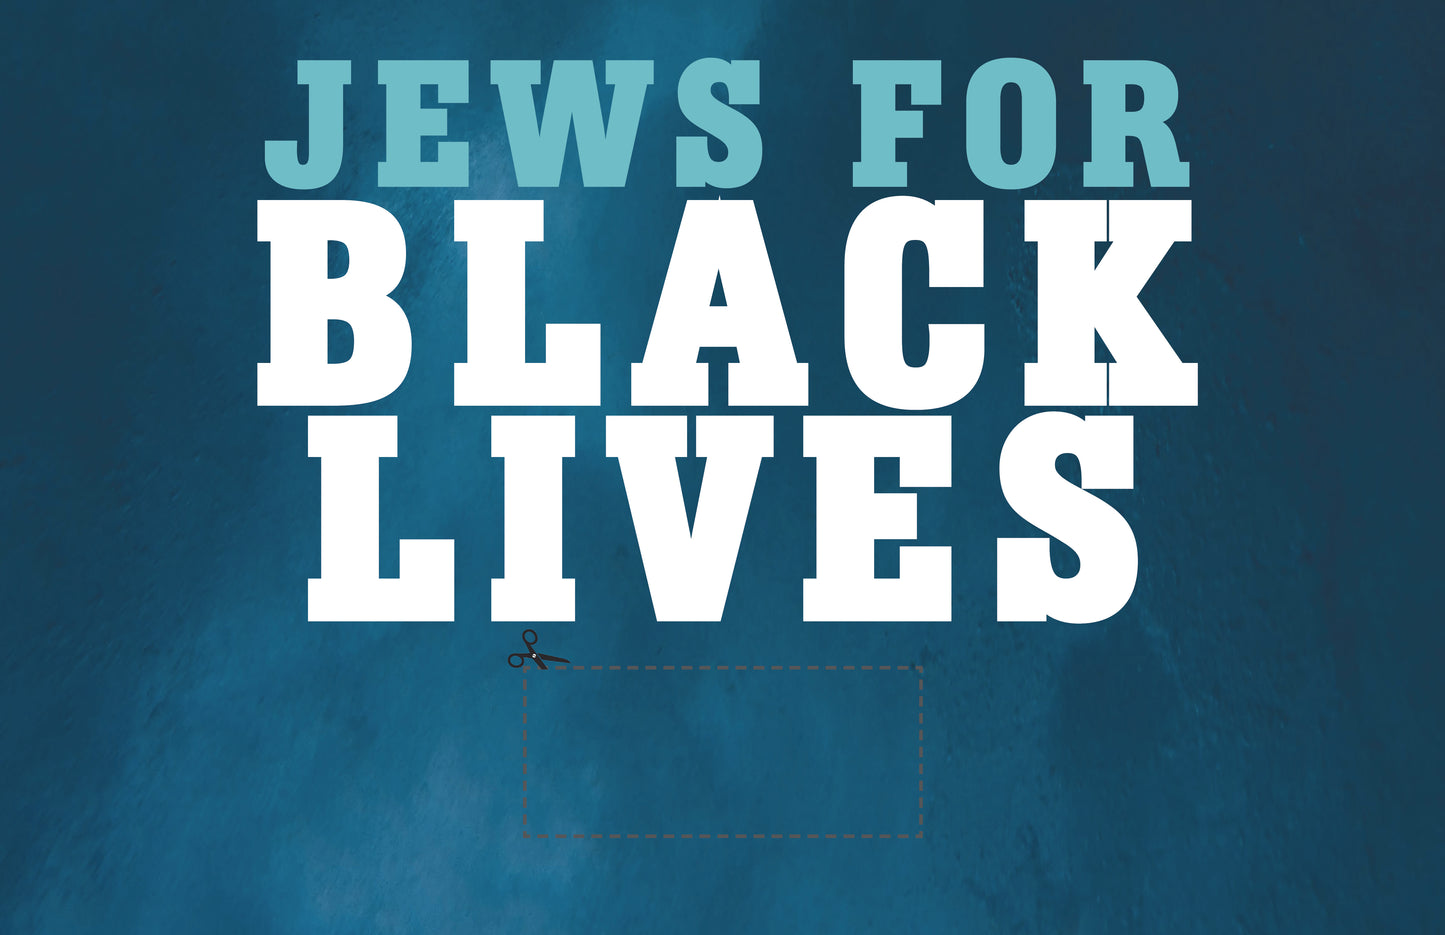 JEWS for Black Lives protest sign blue